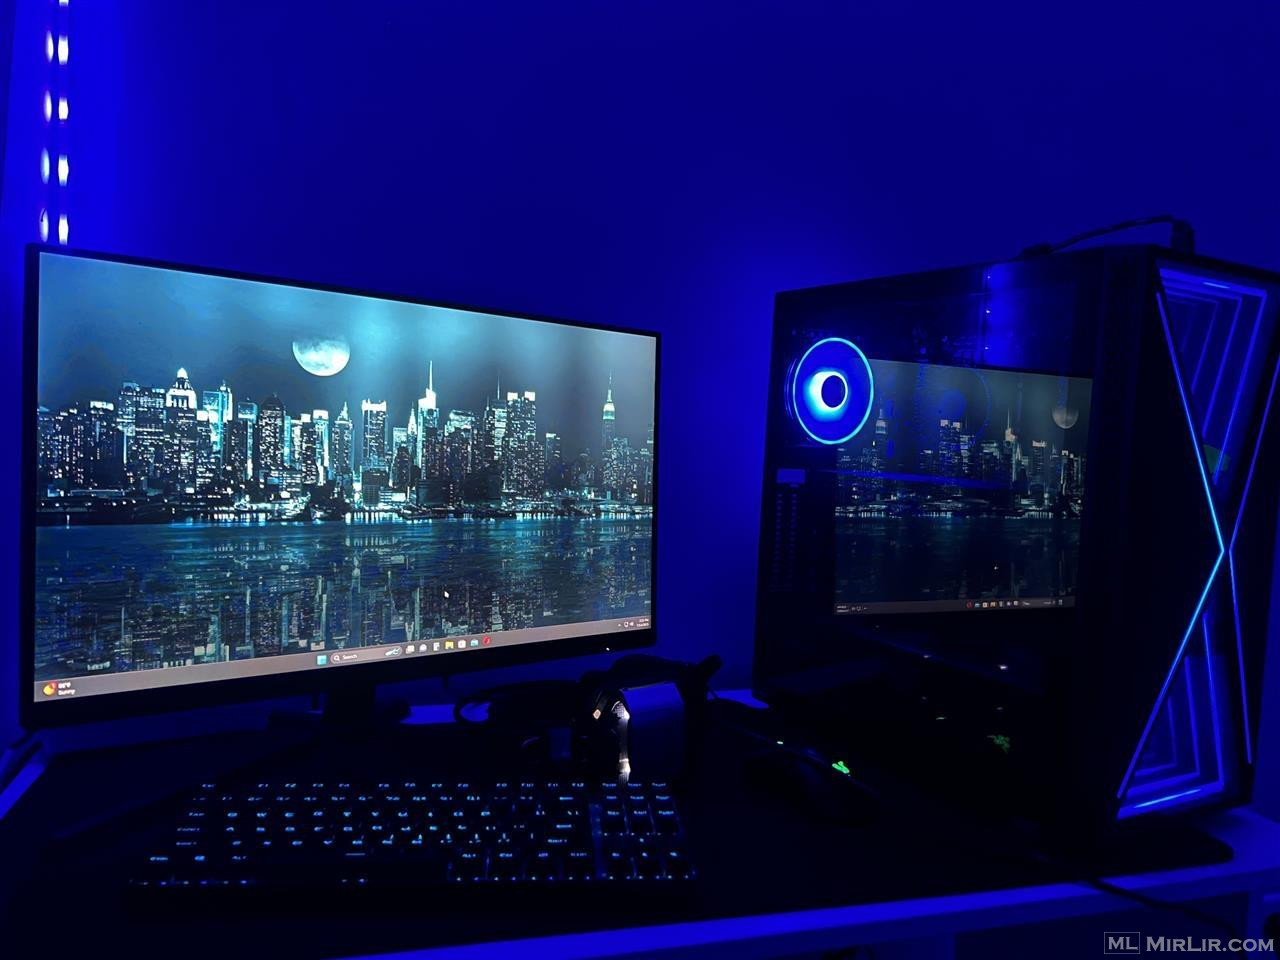 Kompjuter gaming (setup)